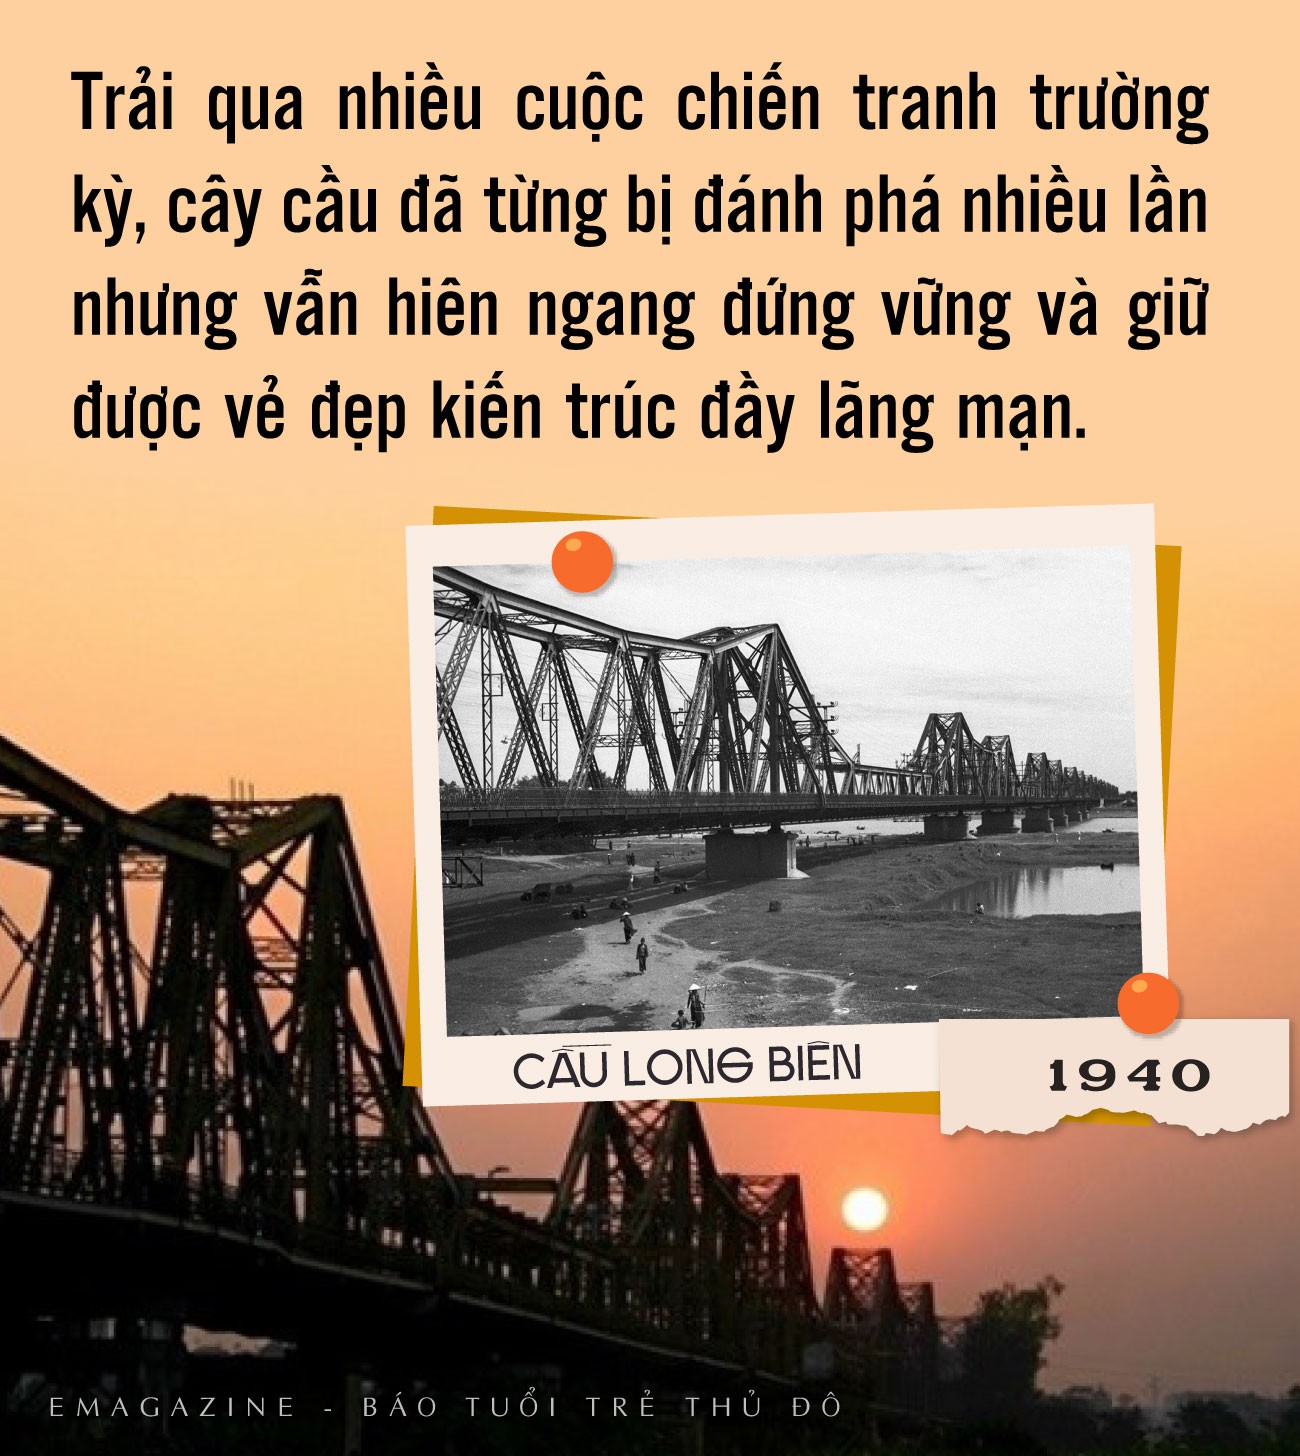 Bài 1: Những cây cầu mang tầm vóc của thời đại